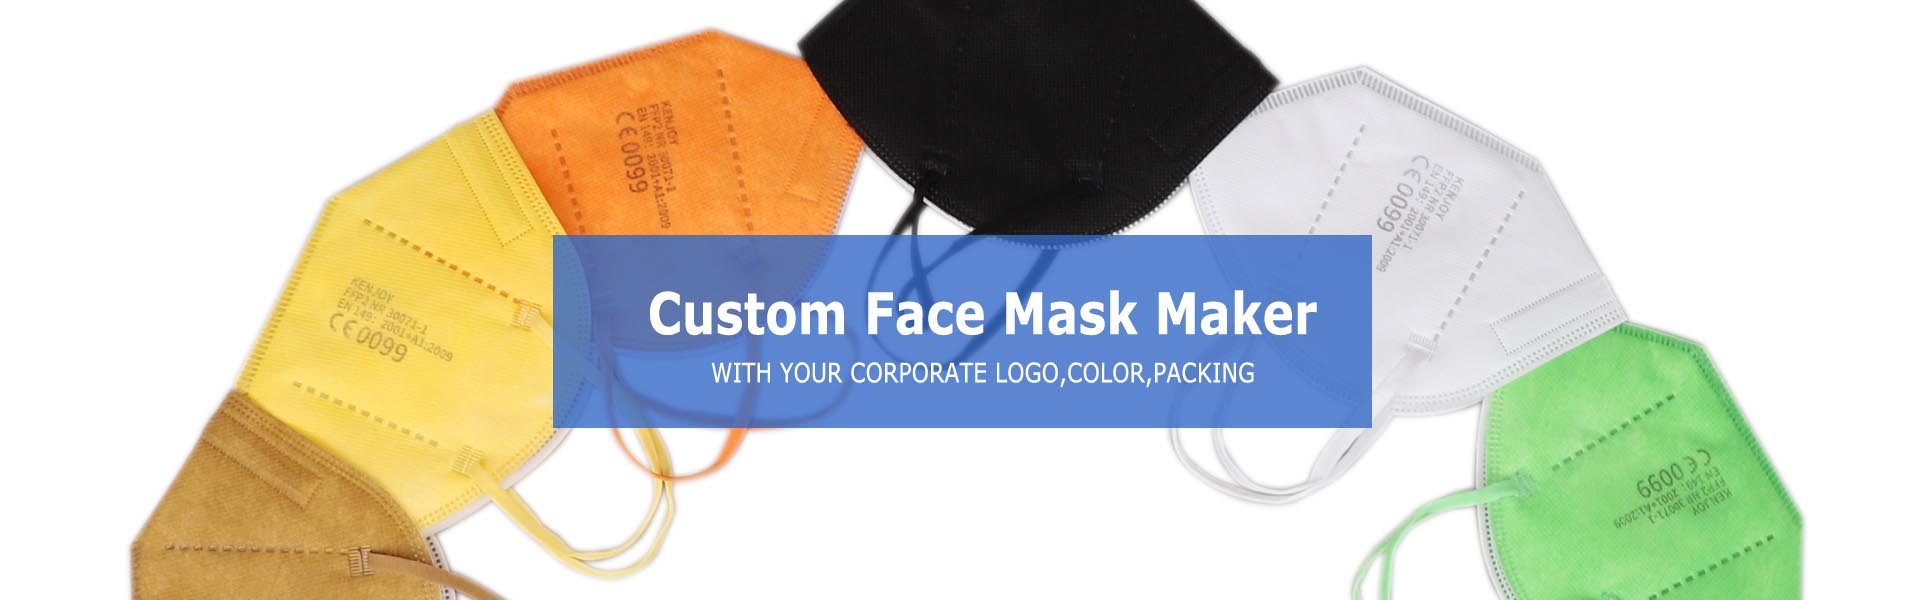 veleprodaja prilagođenih maski za lice